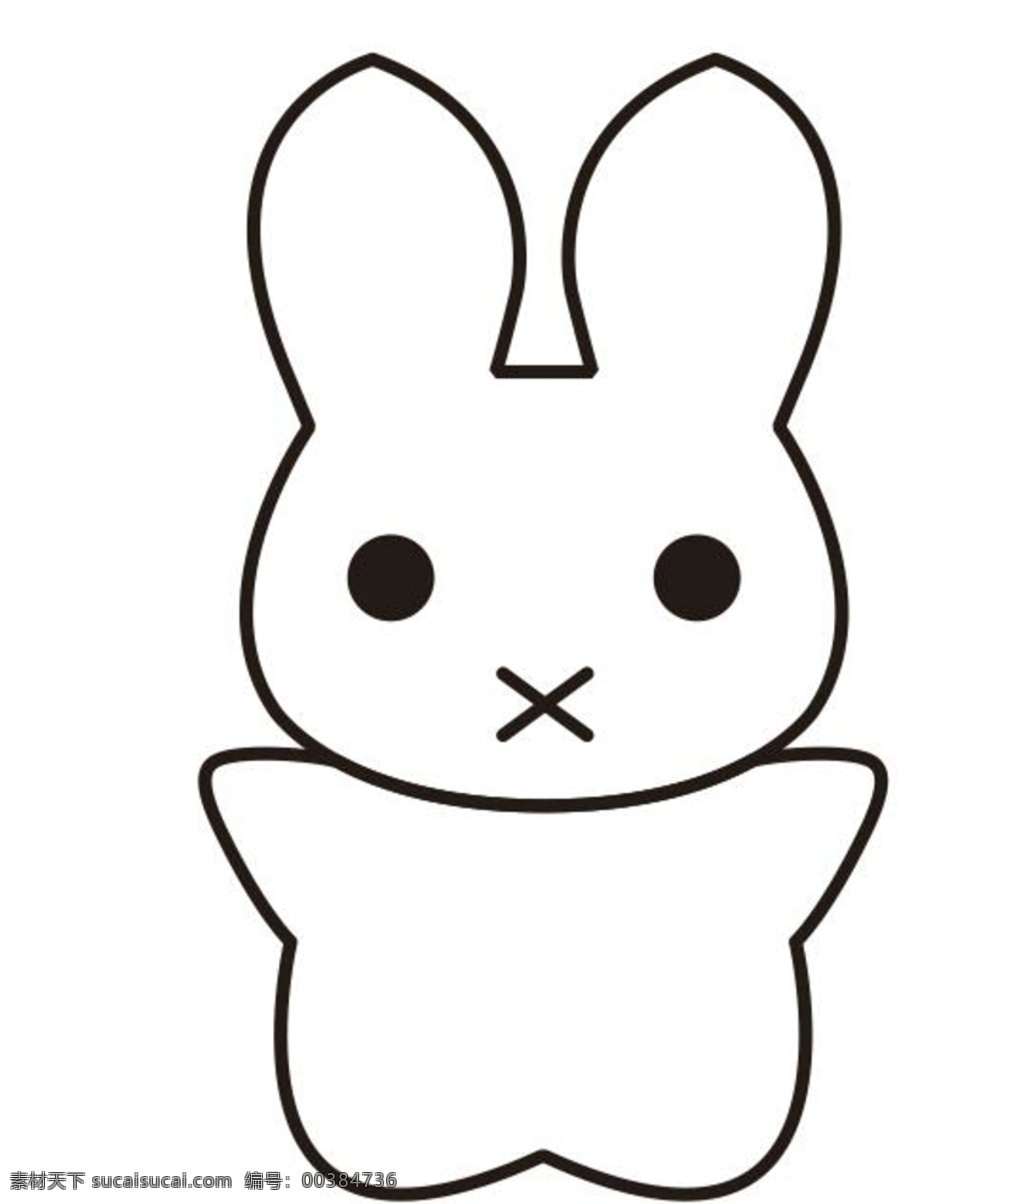 矢量 卡通 线条 小 白兔 矢量卡通白兔 矢量卡通兔子 卡通兔子矢量 卡通白兔矢量 小白兔白又白 少儿 幼儿园 六一儿童节 可爱兔子 线条兔子图案 可爱小白兔 简笔画 兔子简笔画 小白兔简笔画 兔子轮廓图